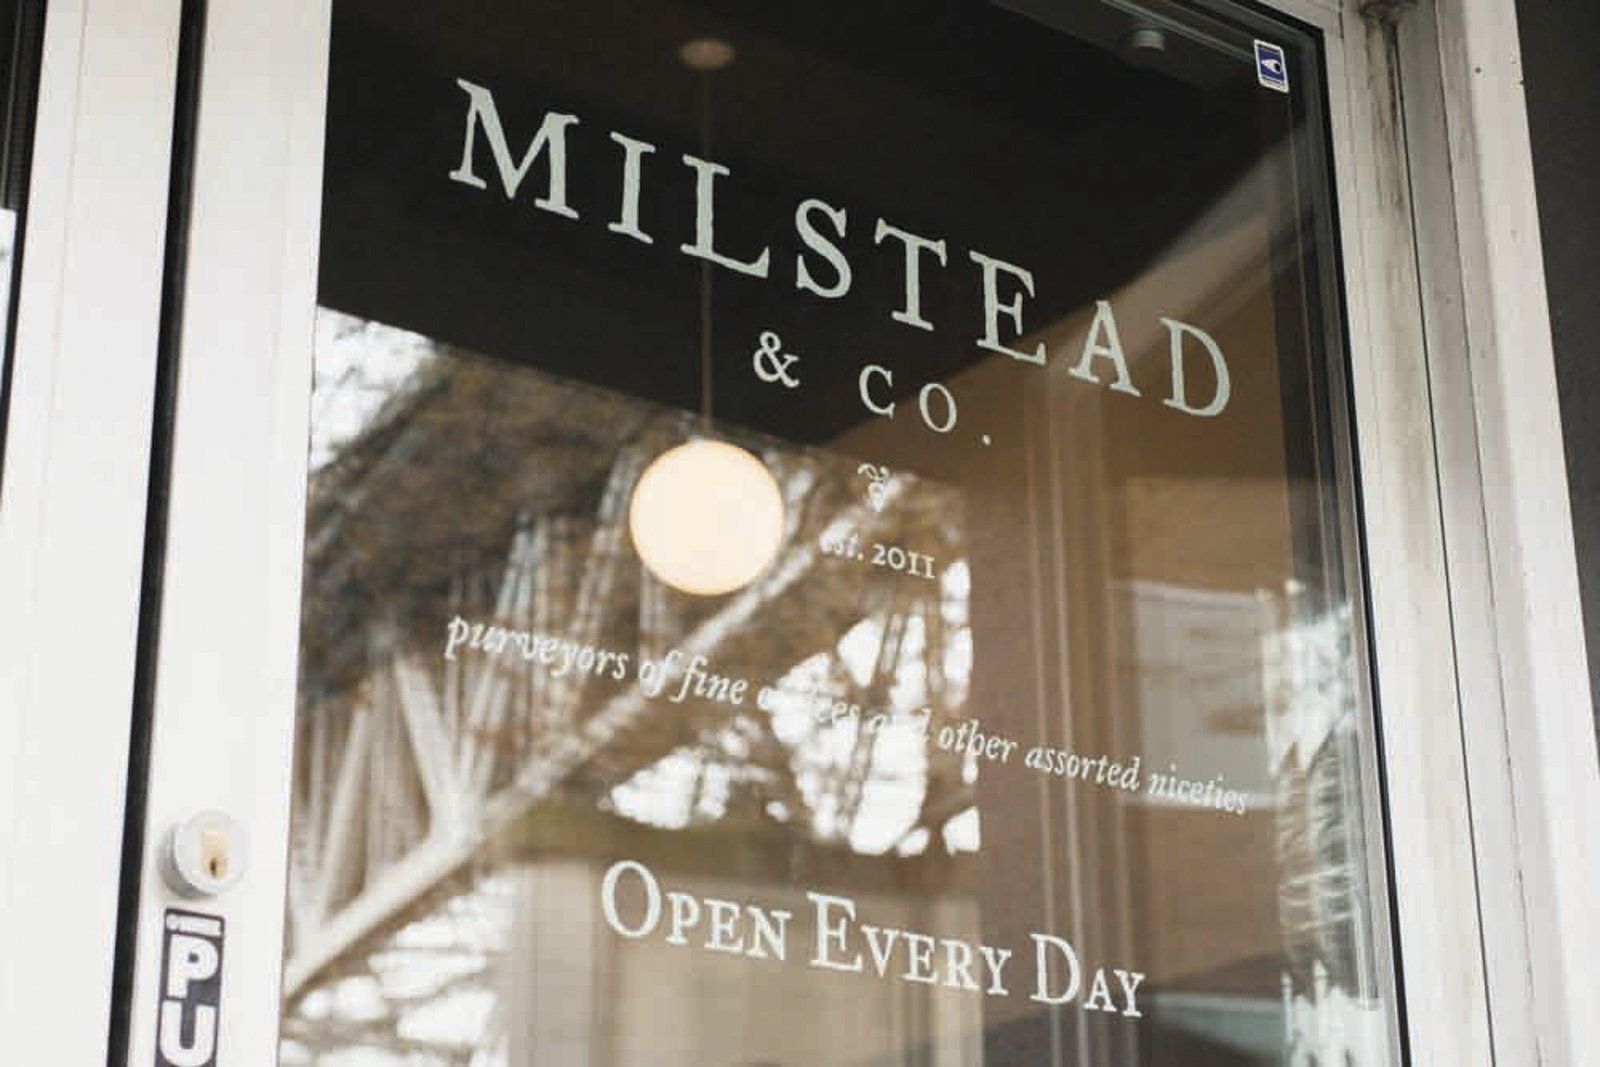 Milstead & Co, Seattle